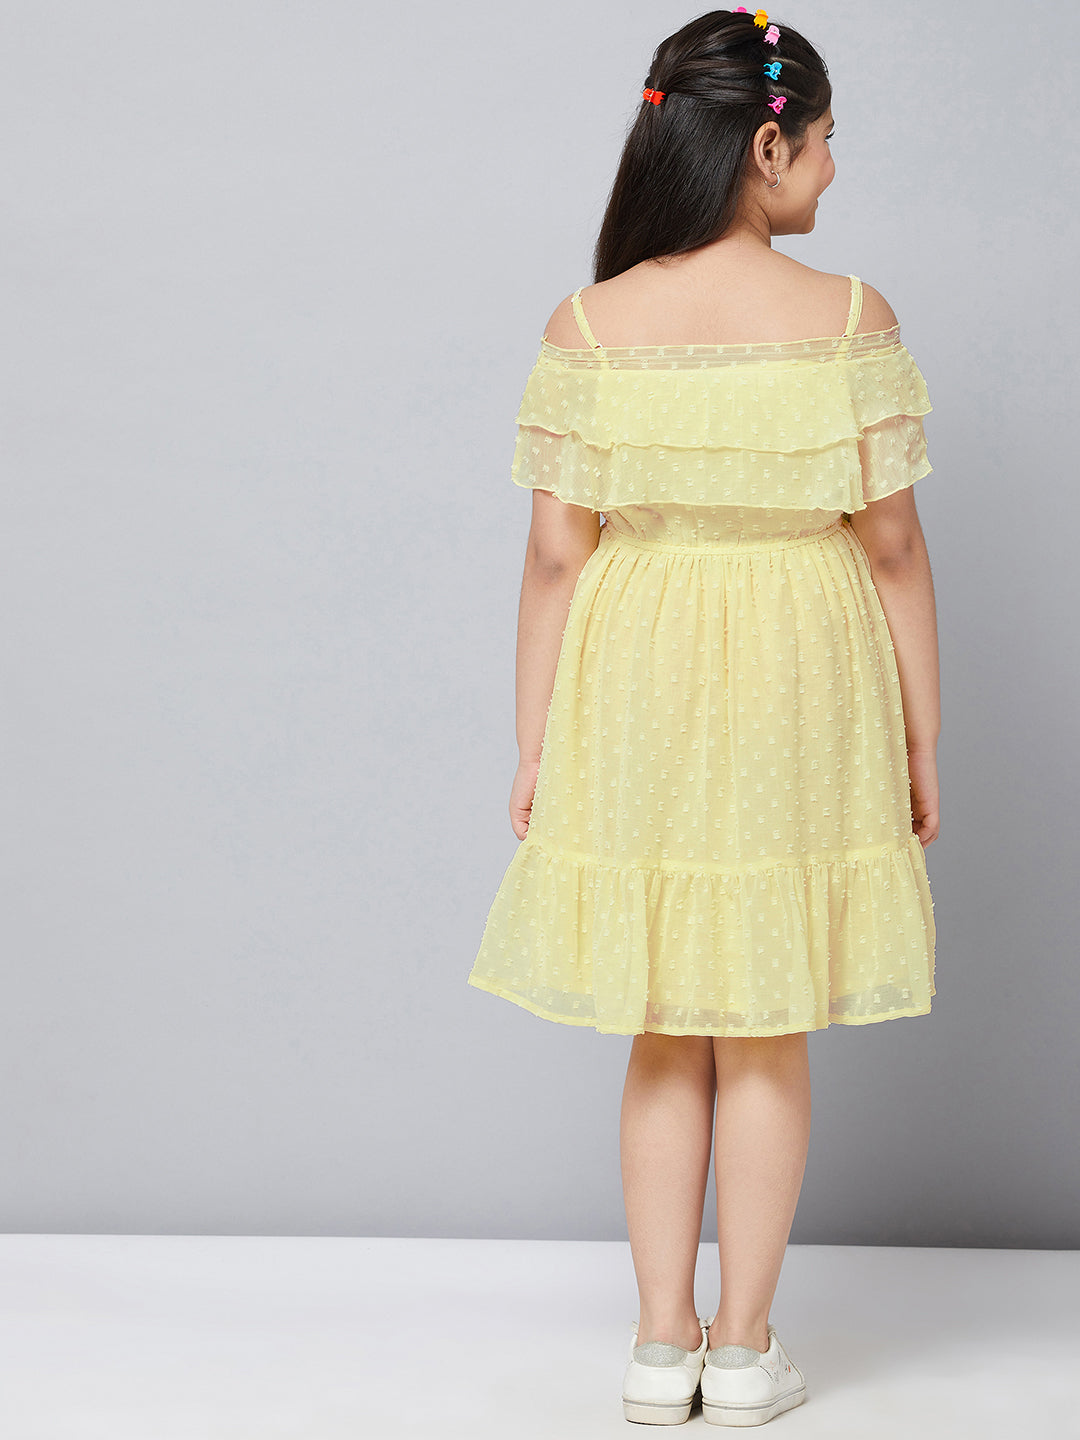 Girl's Solid Dress Yellow - StyloBug KIDS